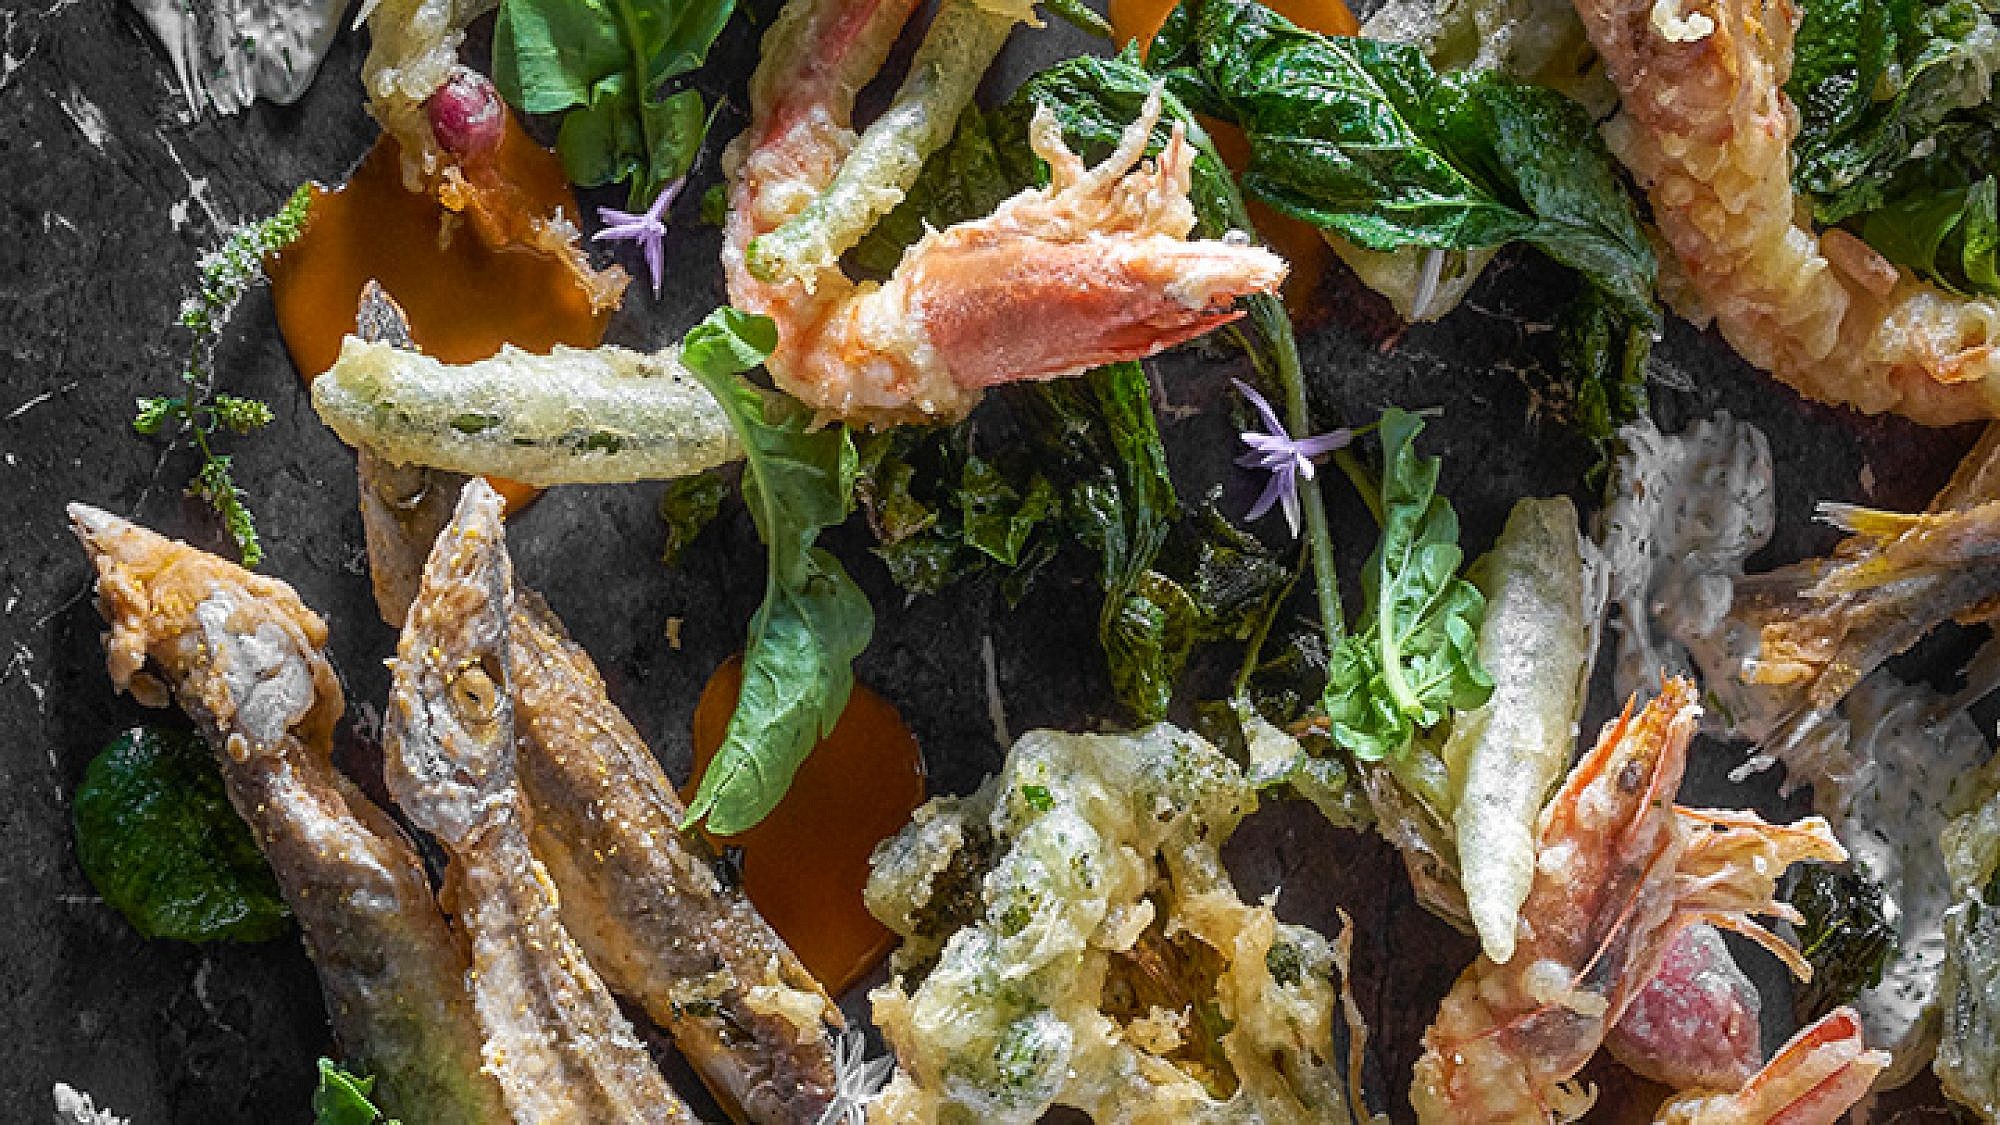 ירקות ודגים עונתיים בסגנון פריטו מיסטו | צילום: אנטולי מיכאלו | סטיילינג: ענת לבל